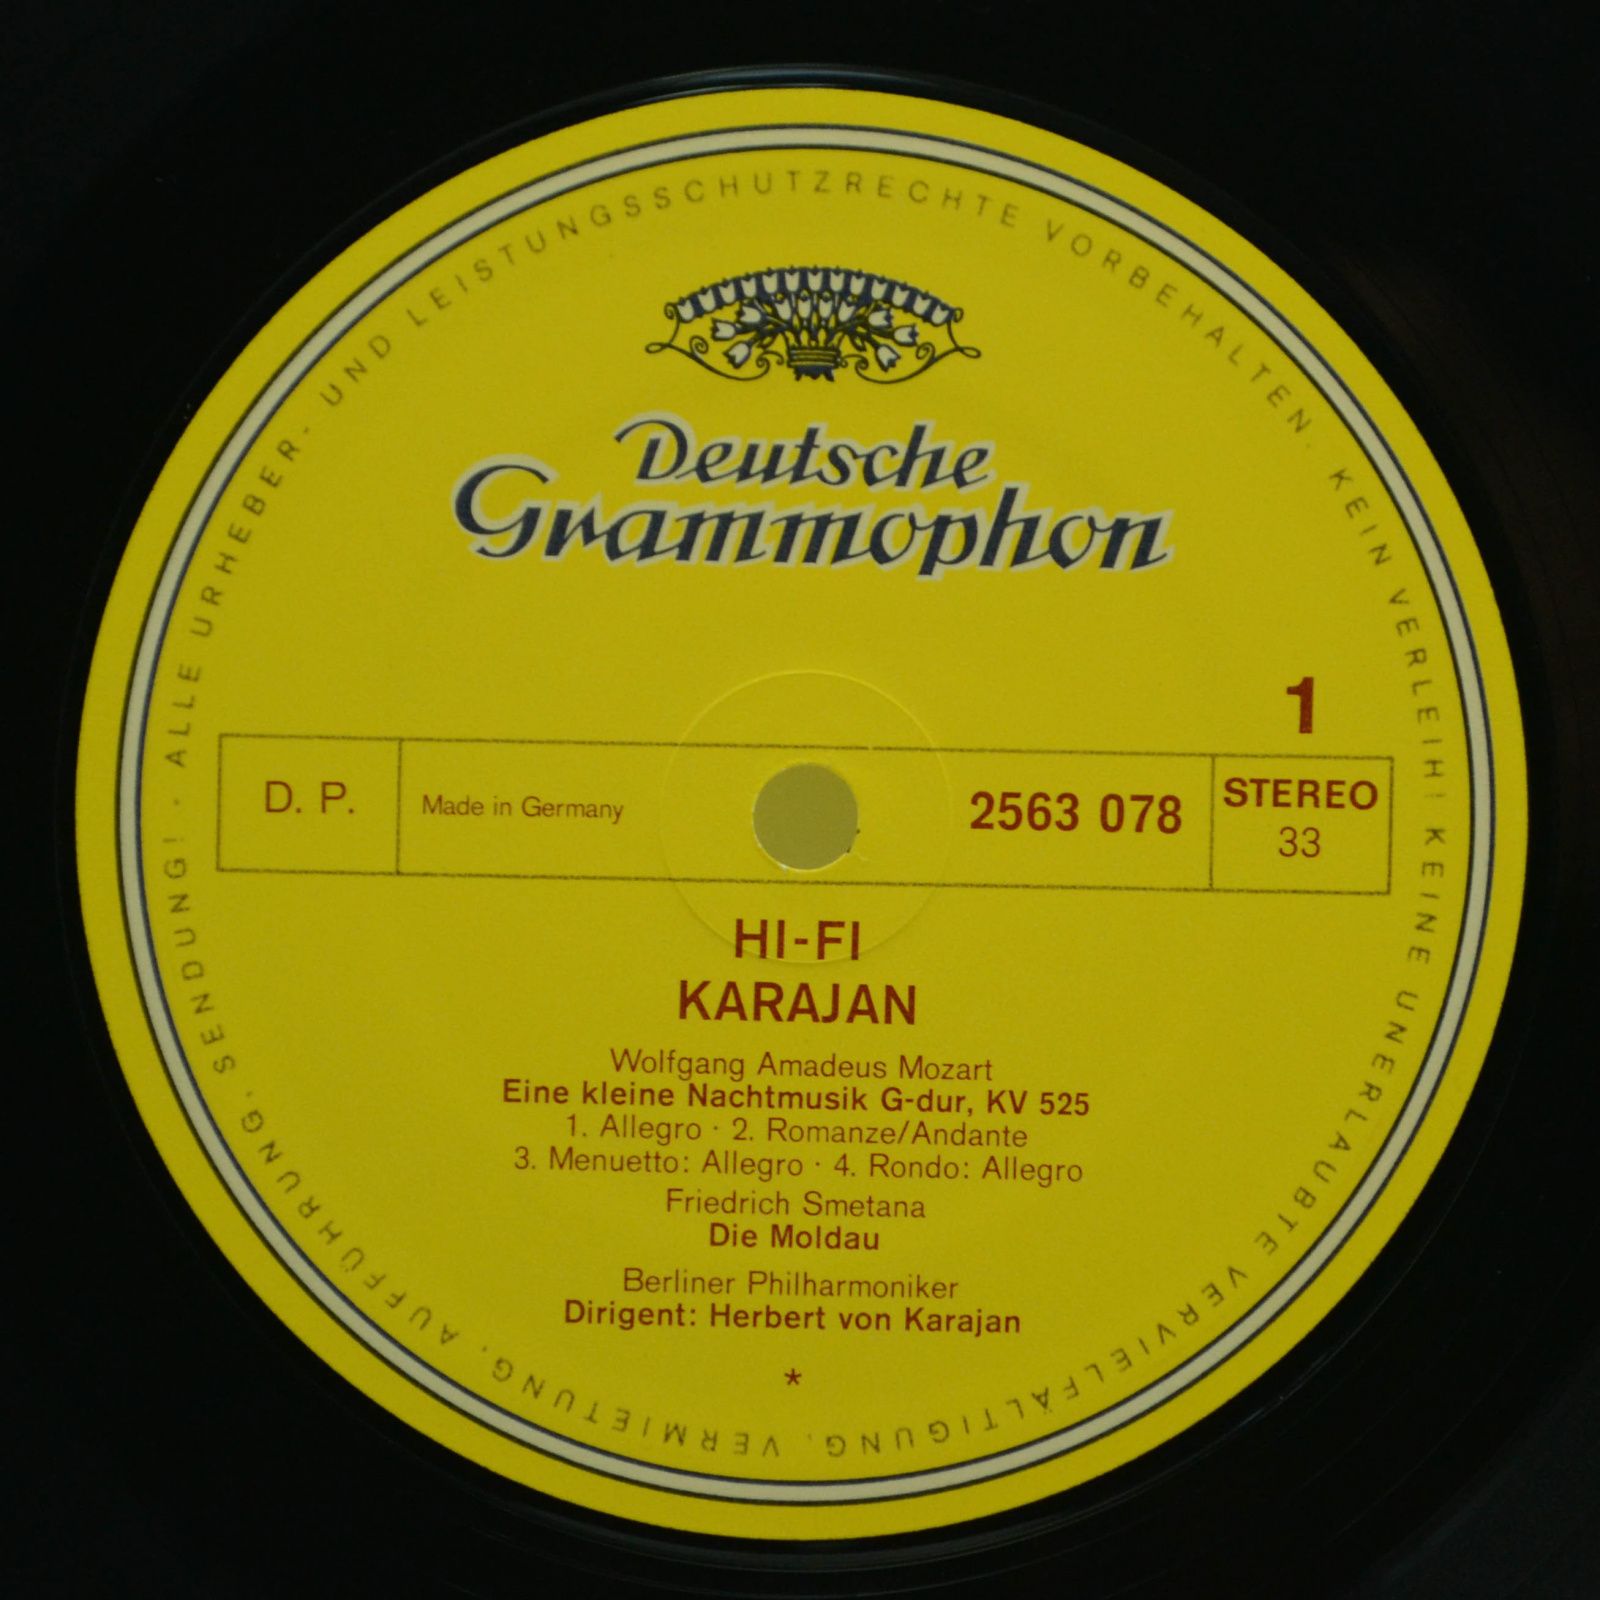 Karajan — Hifi Karajan, 1973